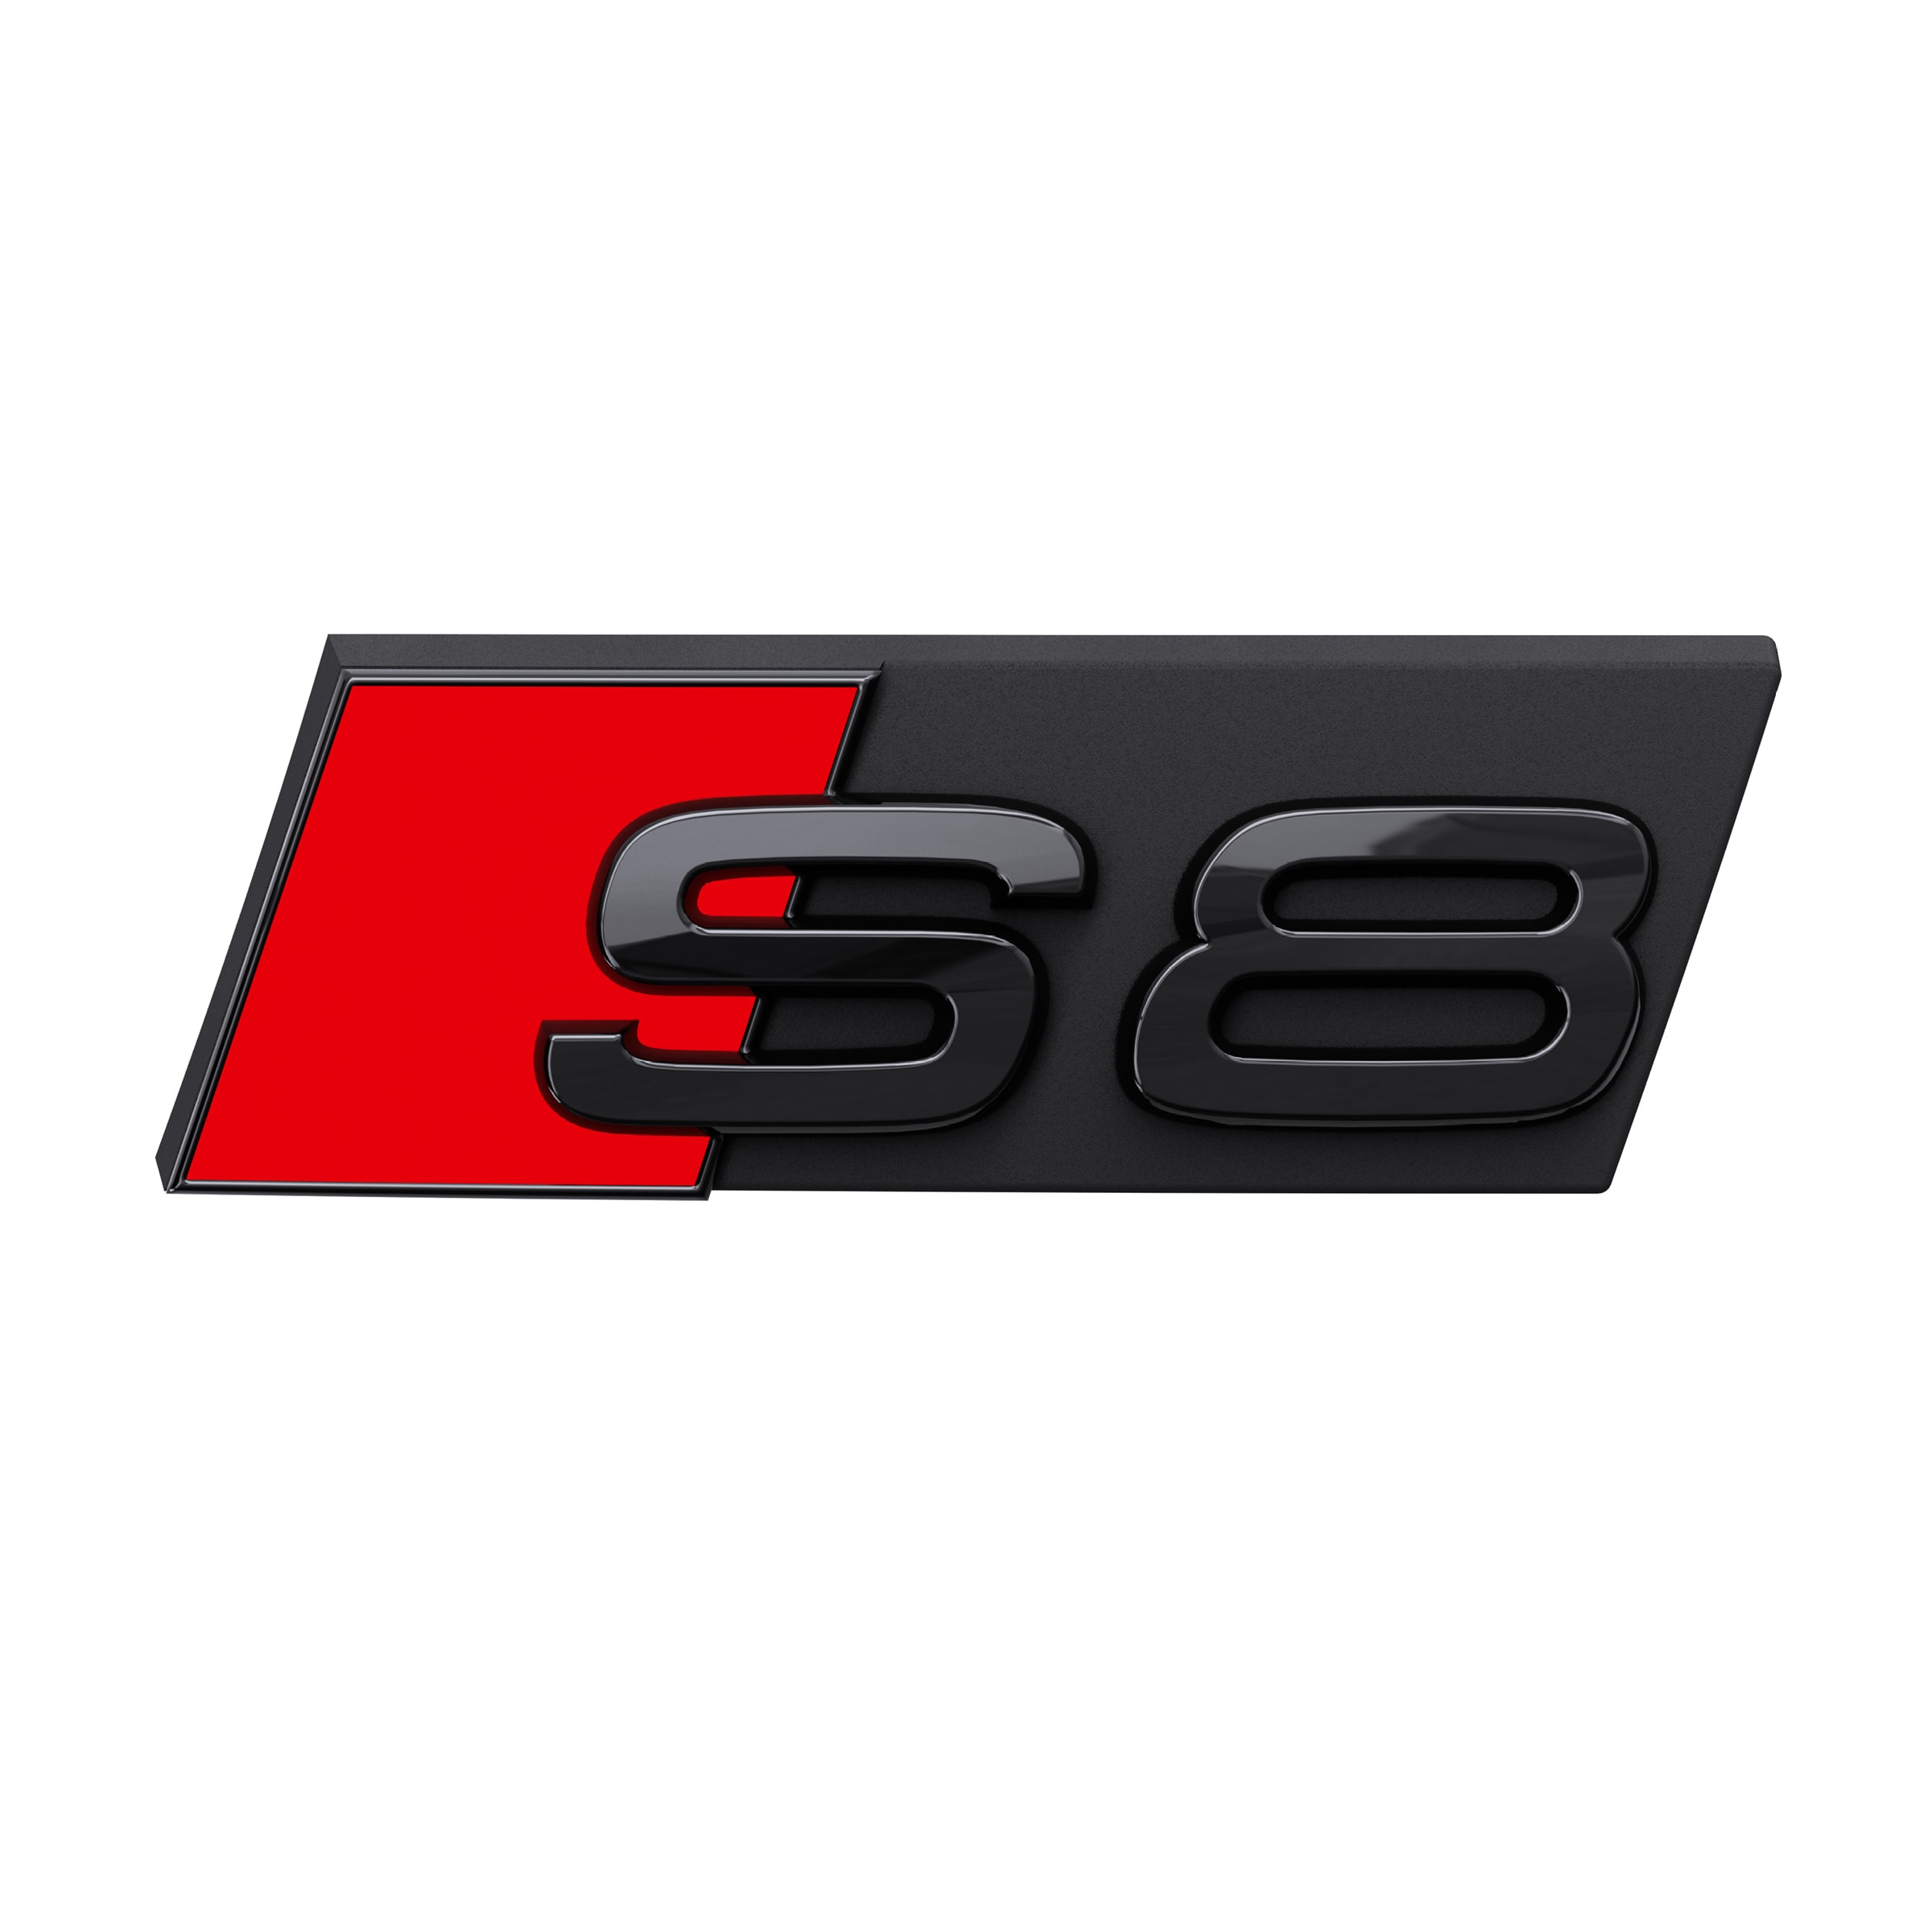 Modellbezeichnung S8 in Schwarz